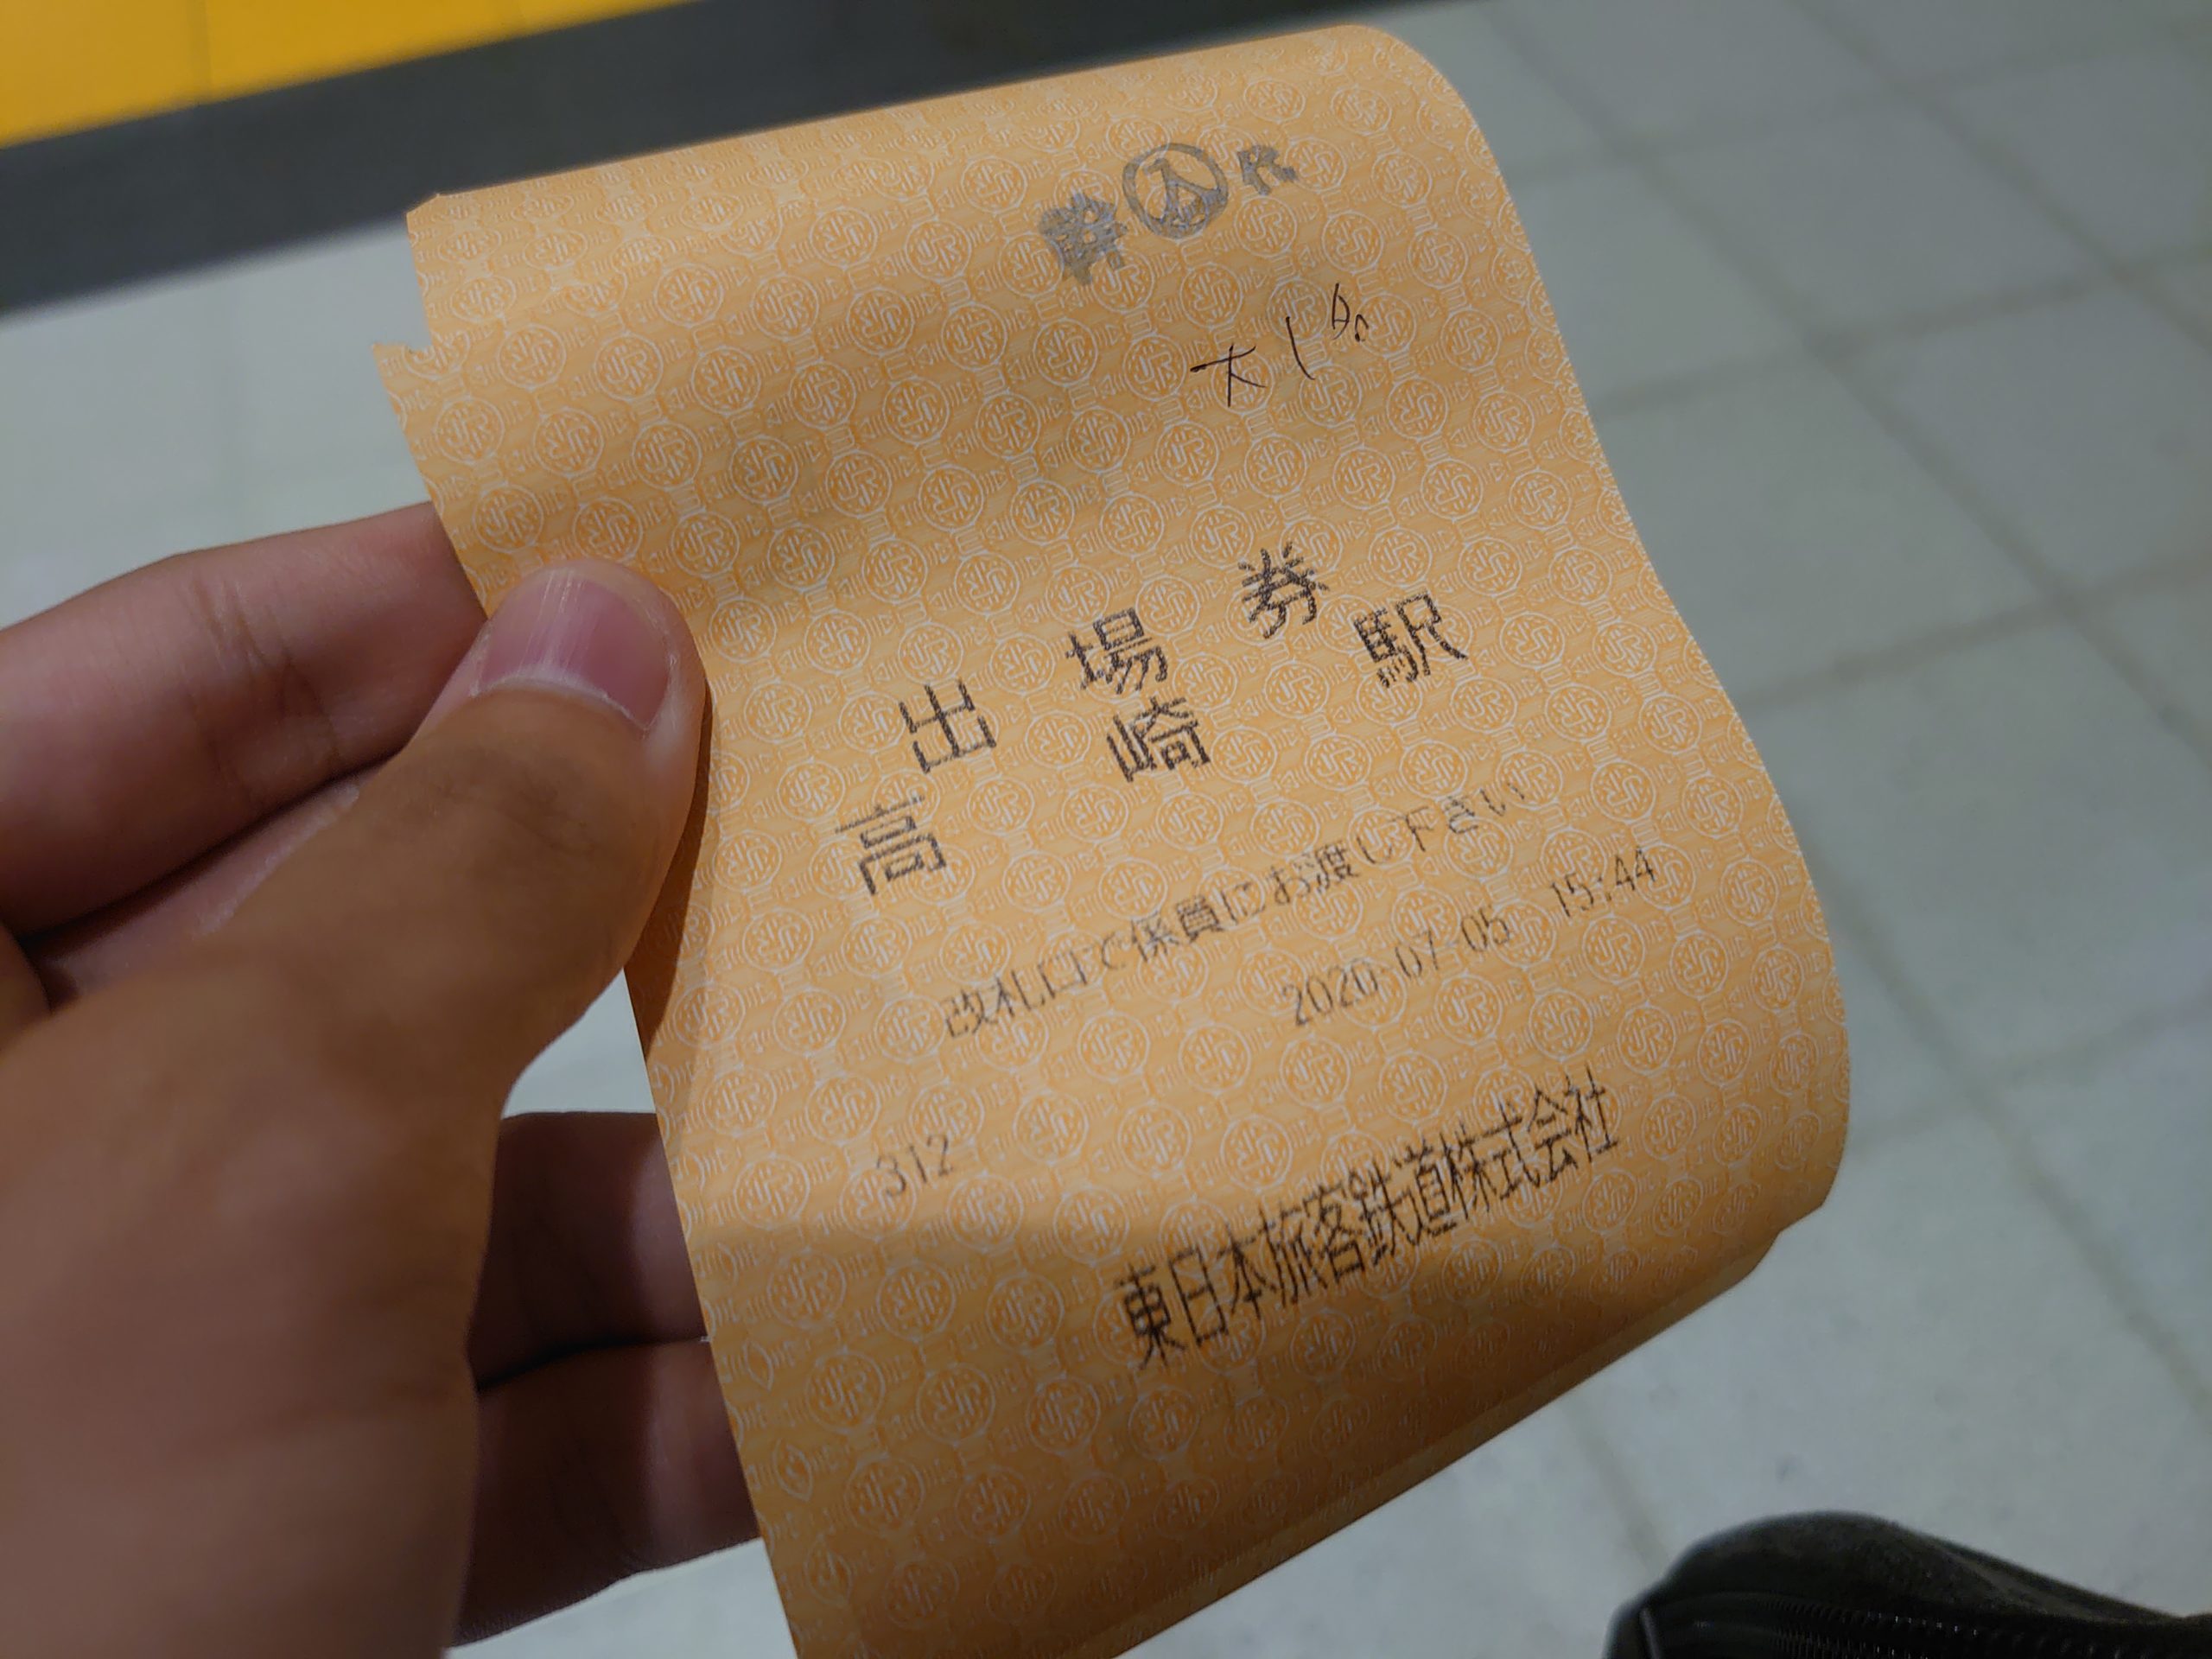 【大回り中に新幹線を撮り鉄できる？】140円大回りで快適で充実した小旅行